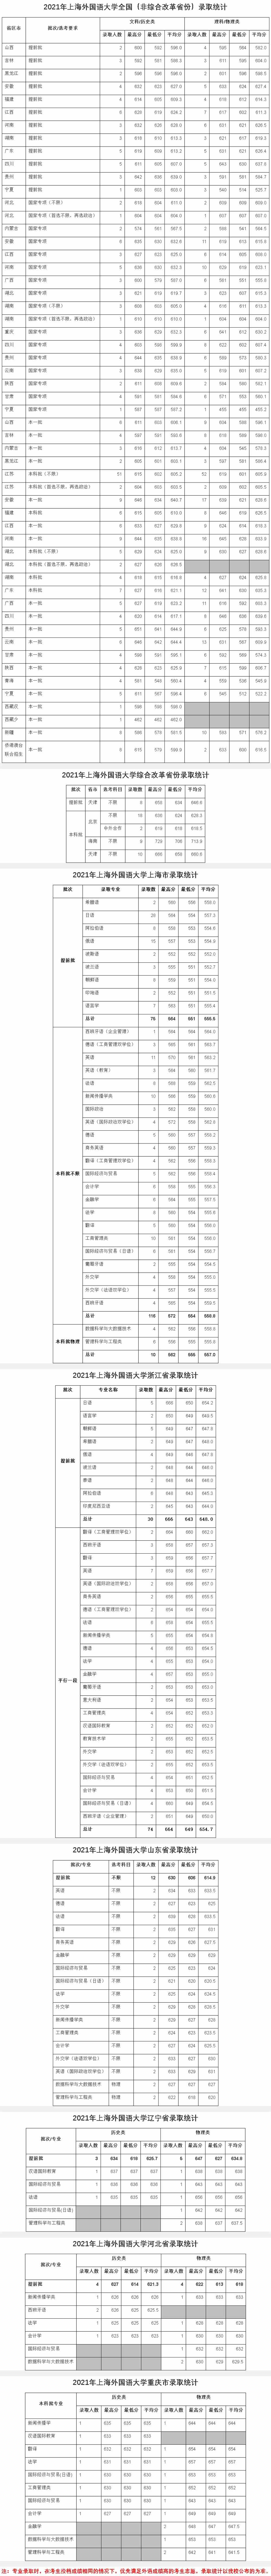 上海外国语大学2021年录取分数统计.jpg